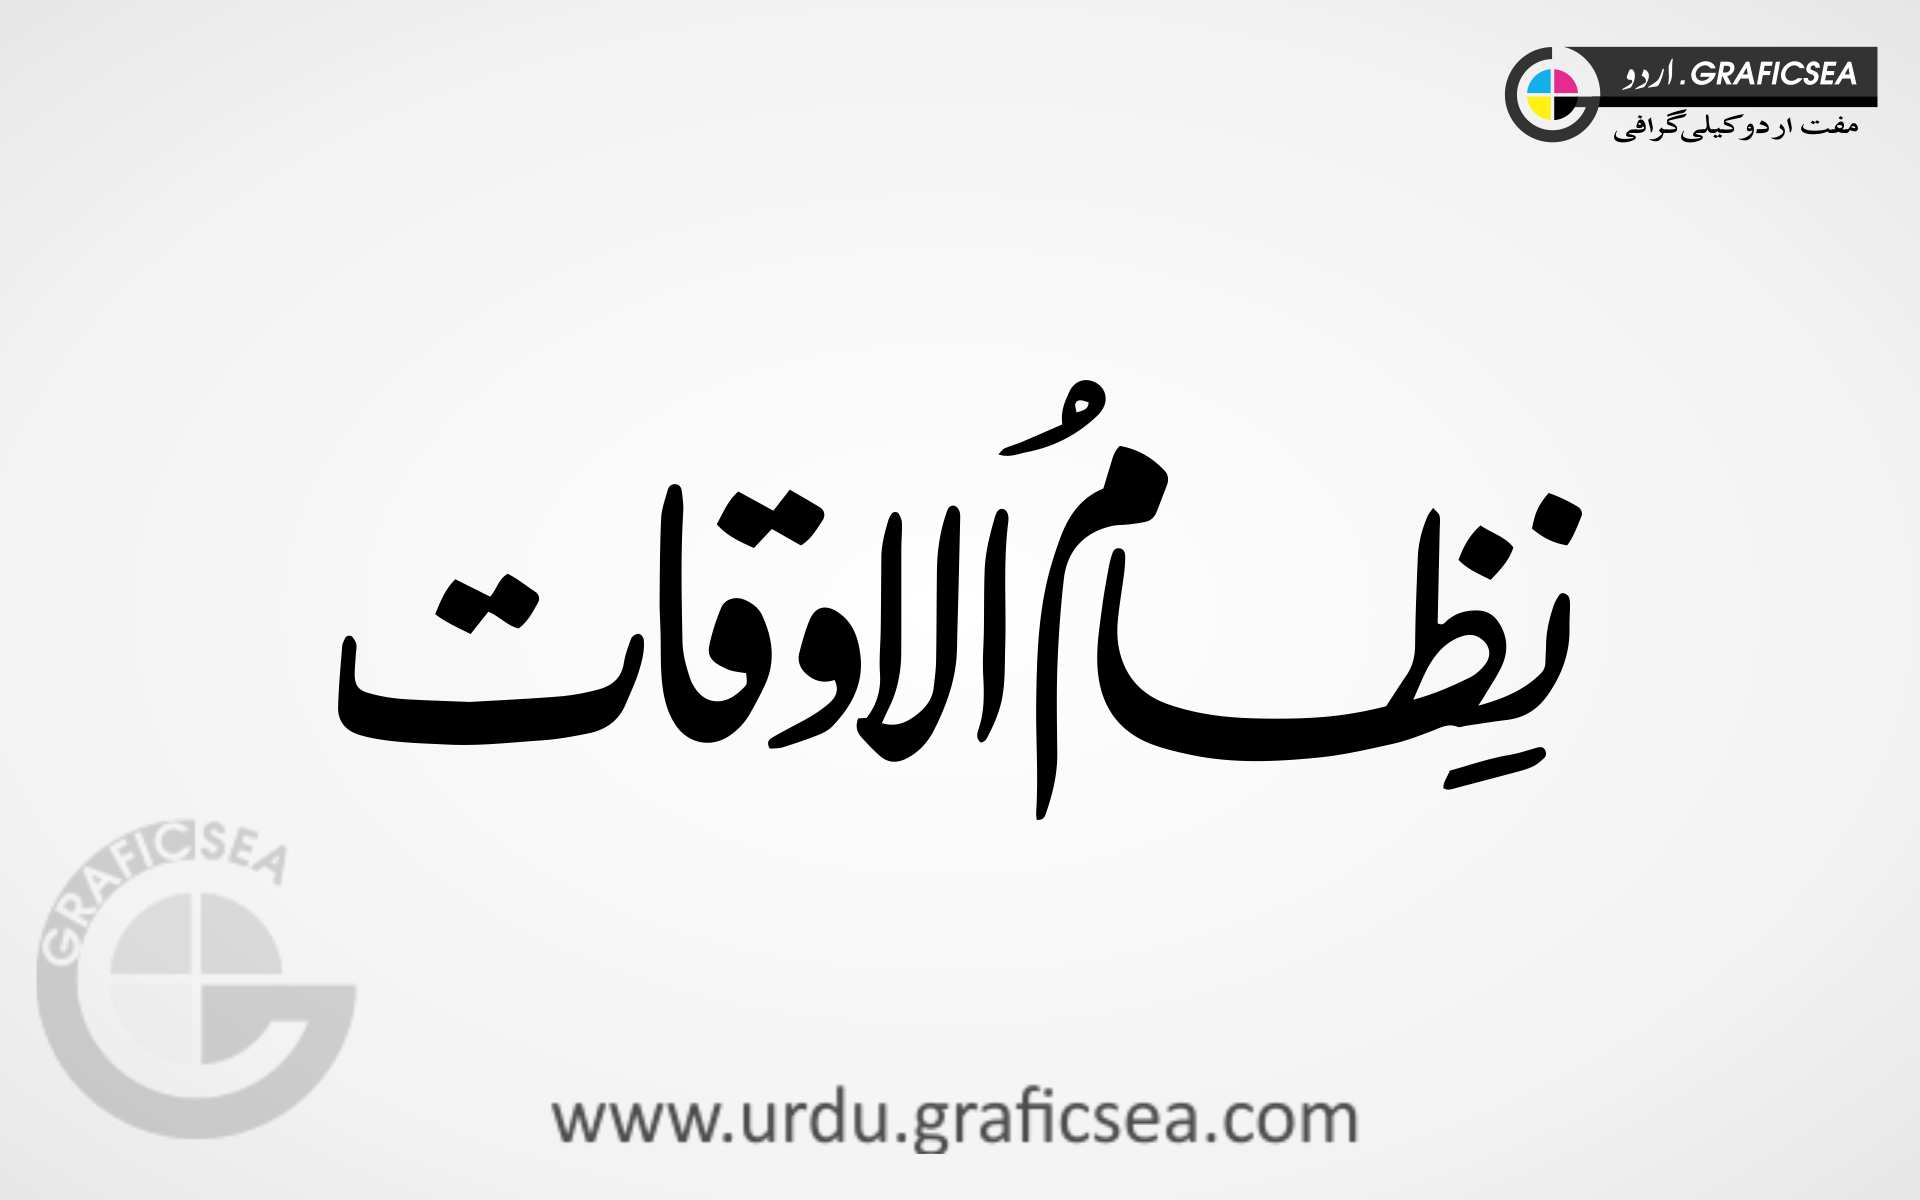 Nizam ul Oqaat Word Urdu Calligraphy